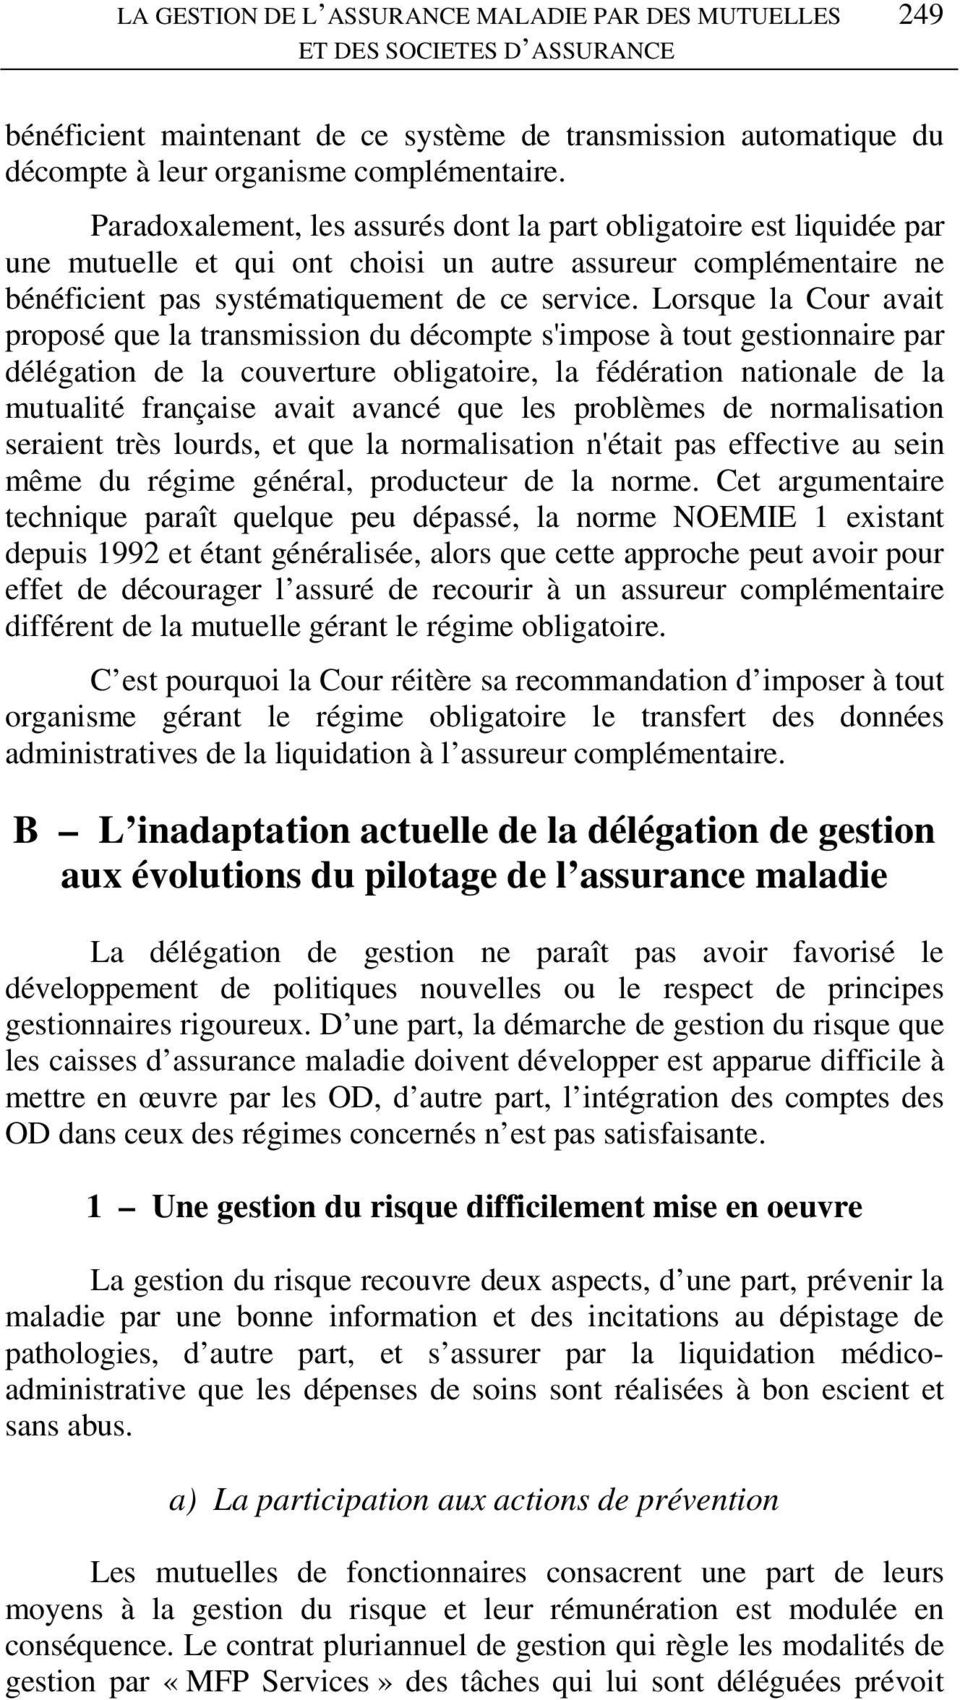 Lorsque la Cour avait proposé que la transmission du décompte s'impose à tout gestionnaire par délégation de la couverture obligatoire, la fédération nationale de la mutualité française avait avancé